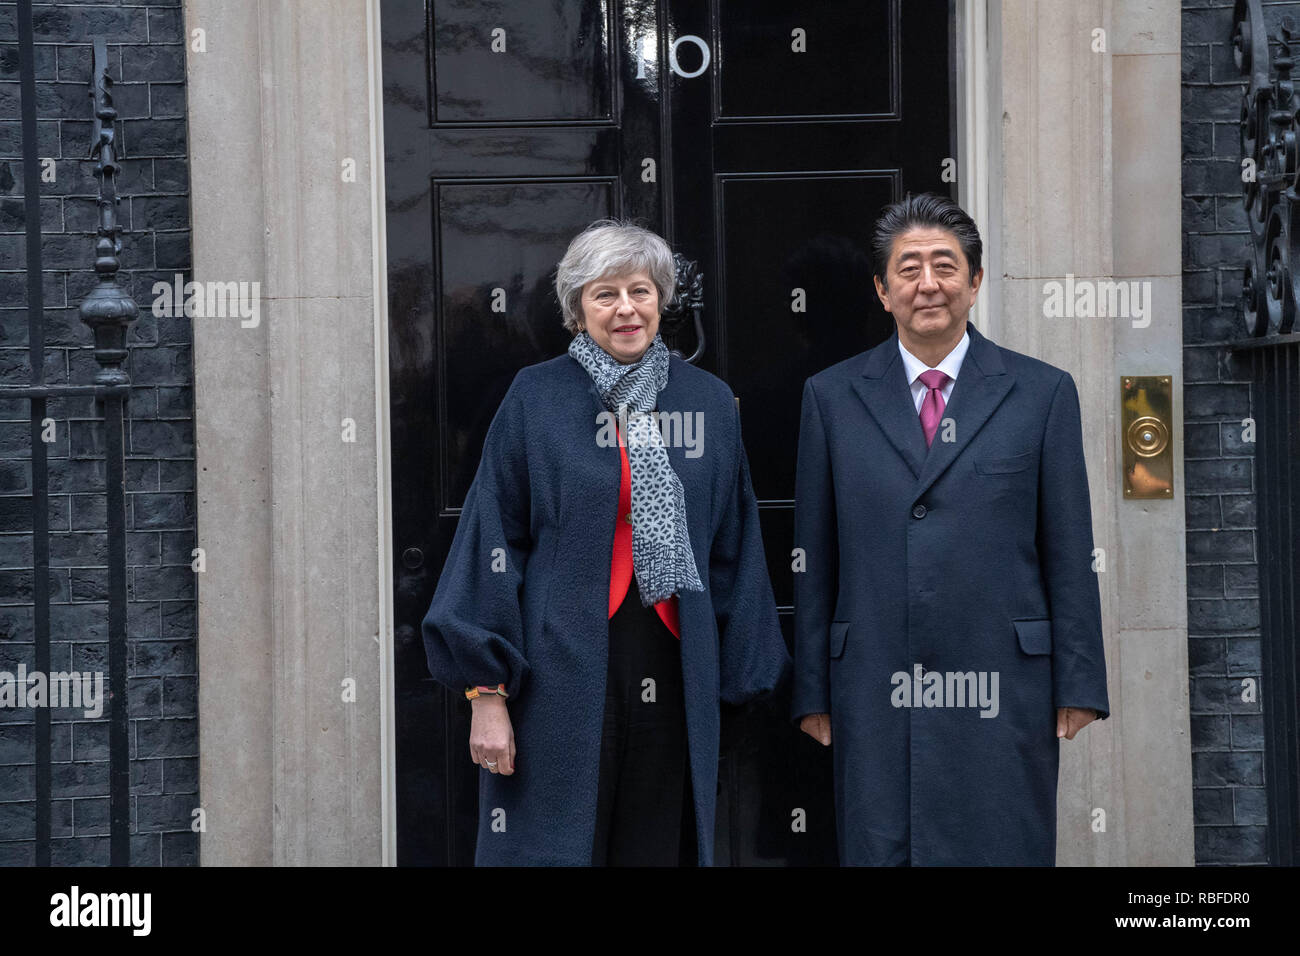 Londres, Royaume-Uni. 10 janvier 2019 Shirizo Abe, Premier Ministre du Japon, visites Theresa peut MP PC, Premier ministre au 10 Downing Street, Londres, Royaume-Uni. Crédit : Ian Davidson/Alamy Live News Banque D'Images